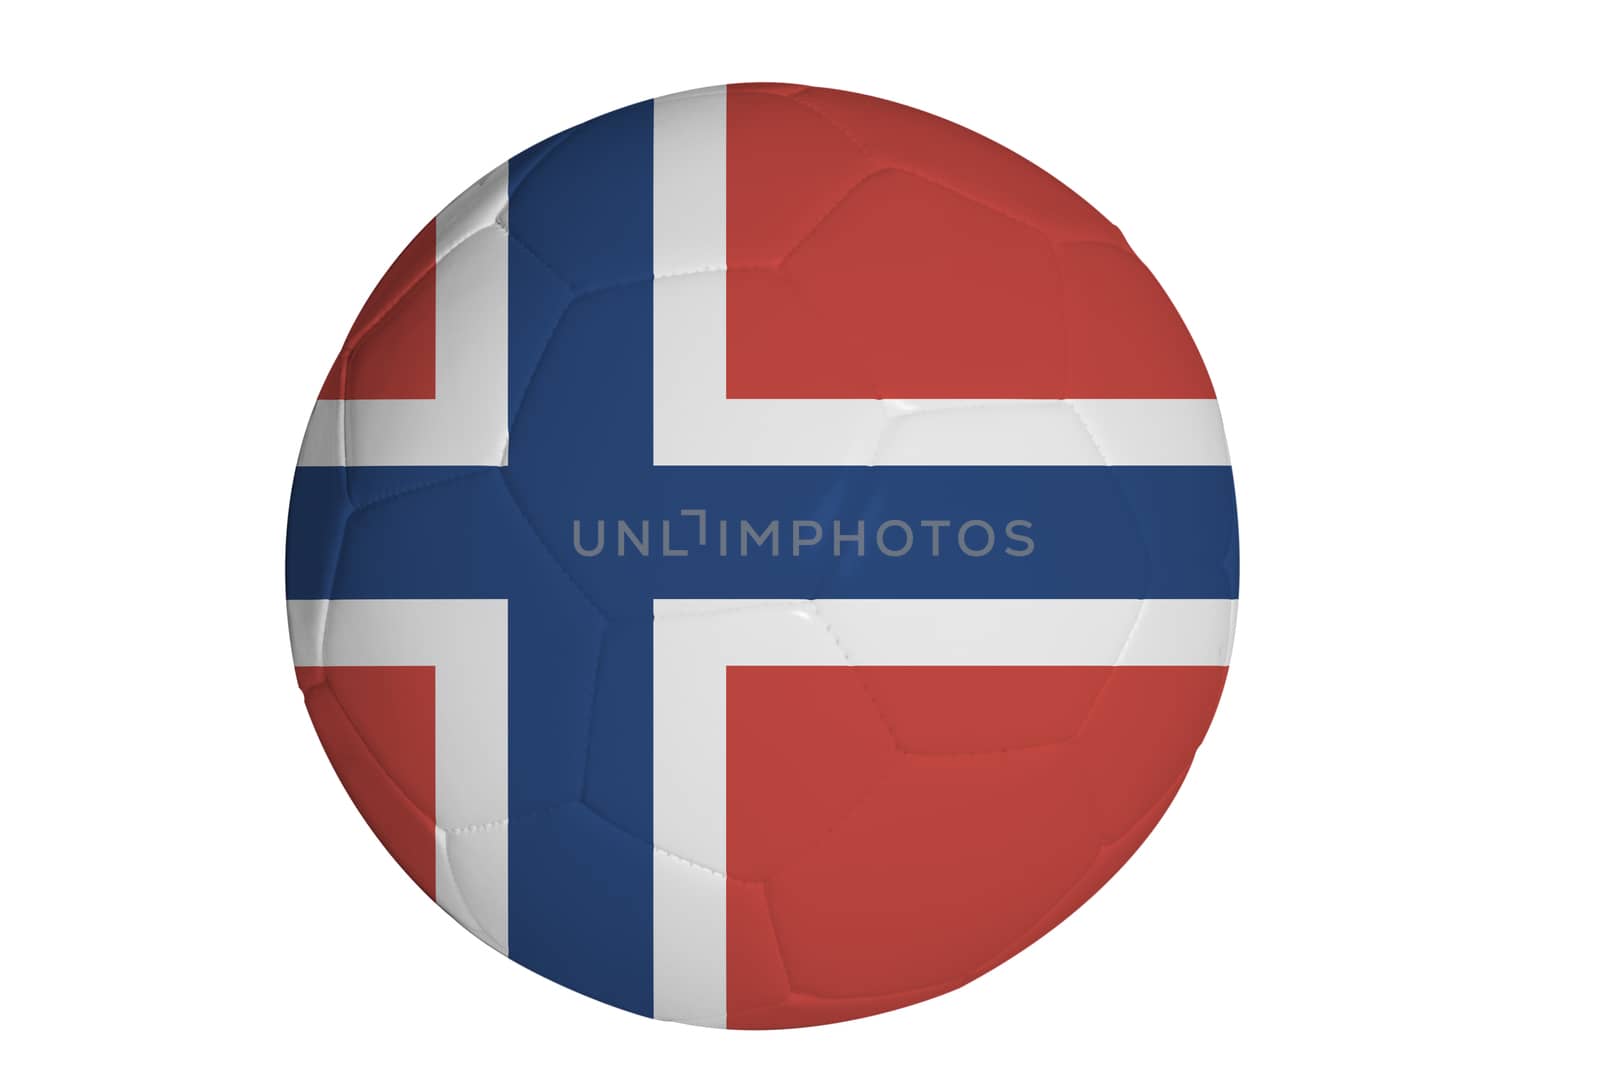 Norwegian flag graphic on soccer ball